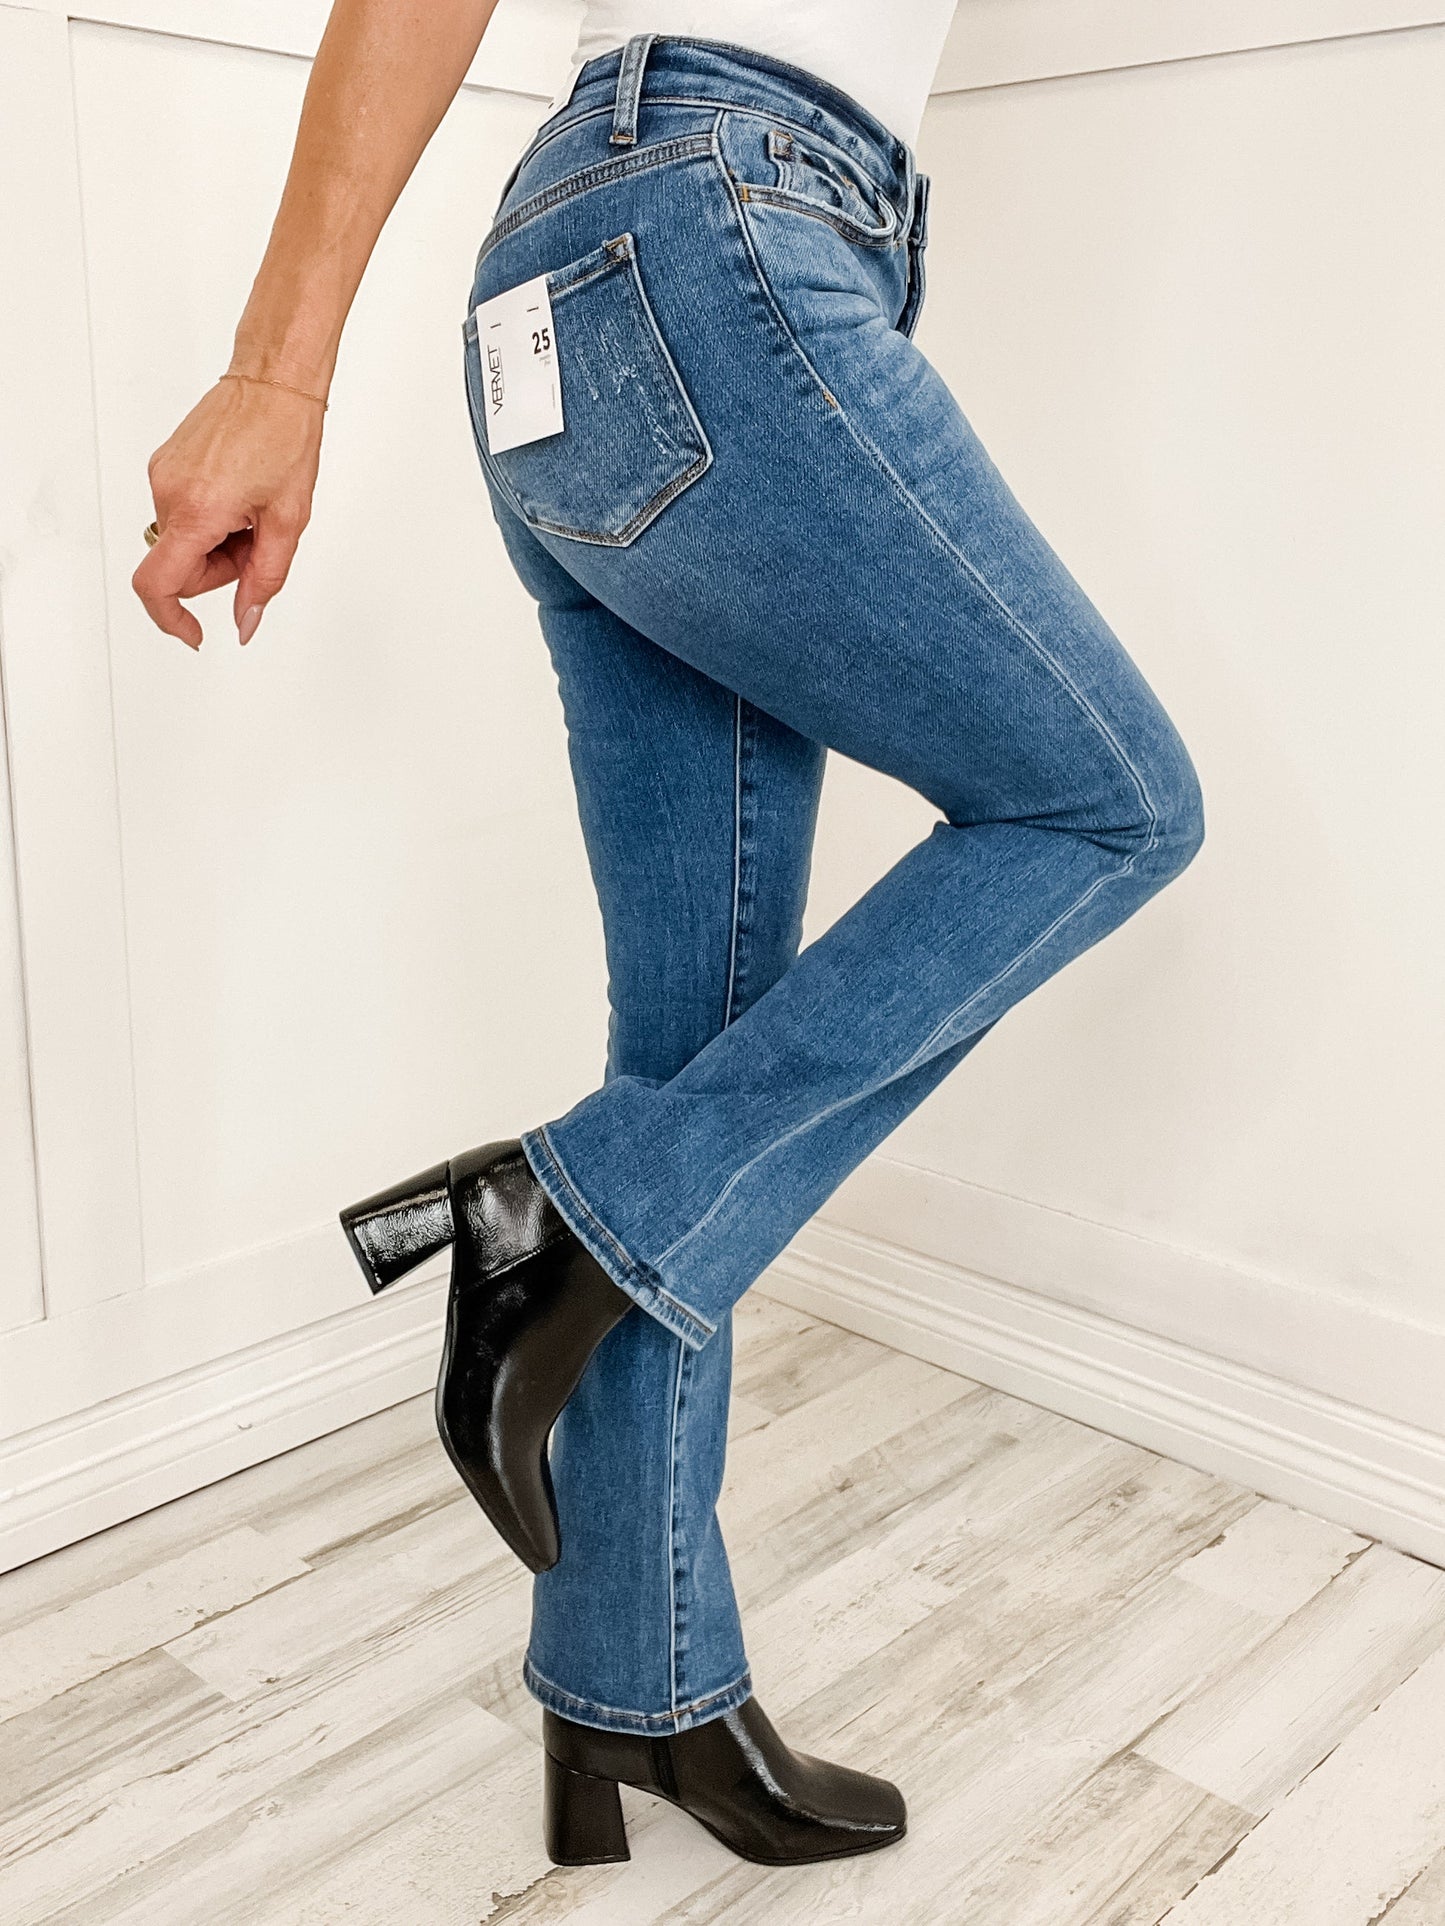 Vervet Shining High Rise Bootcut Jeans - SET A